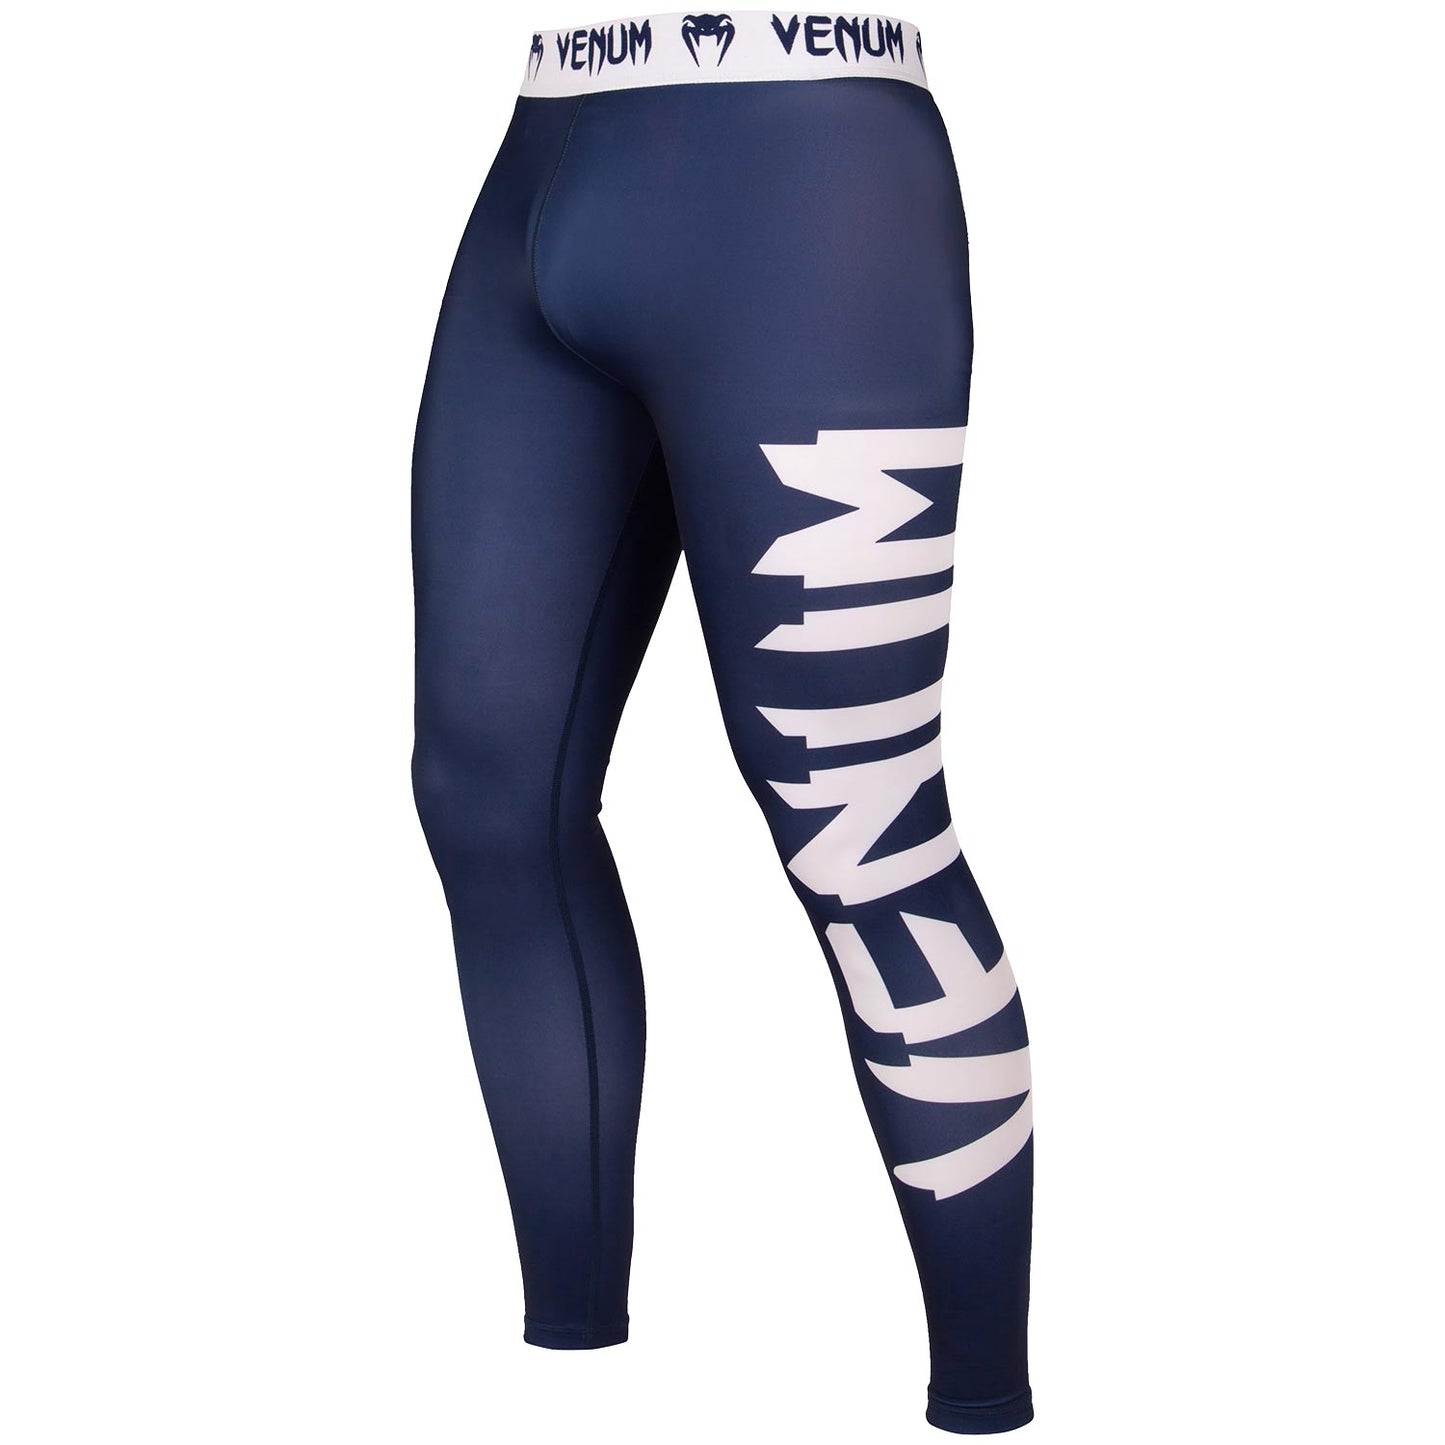 Pantalones de compresión Venum Giant - Azul Marino/Blanco